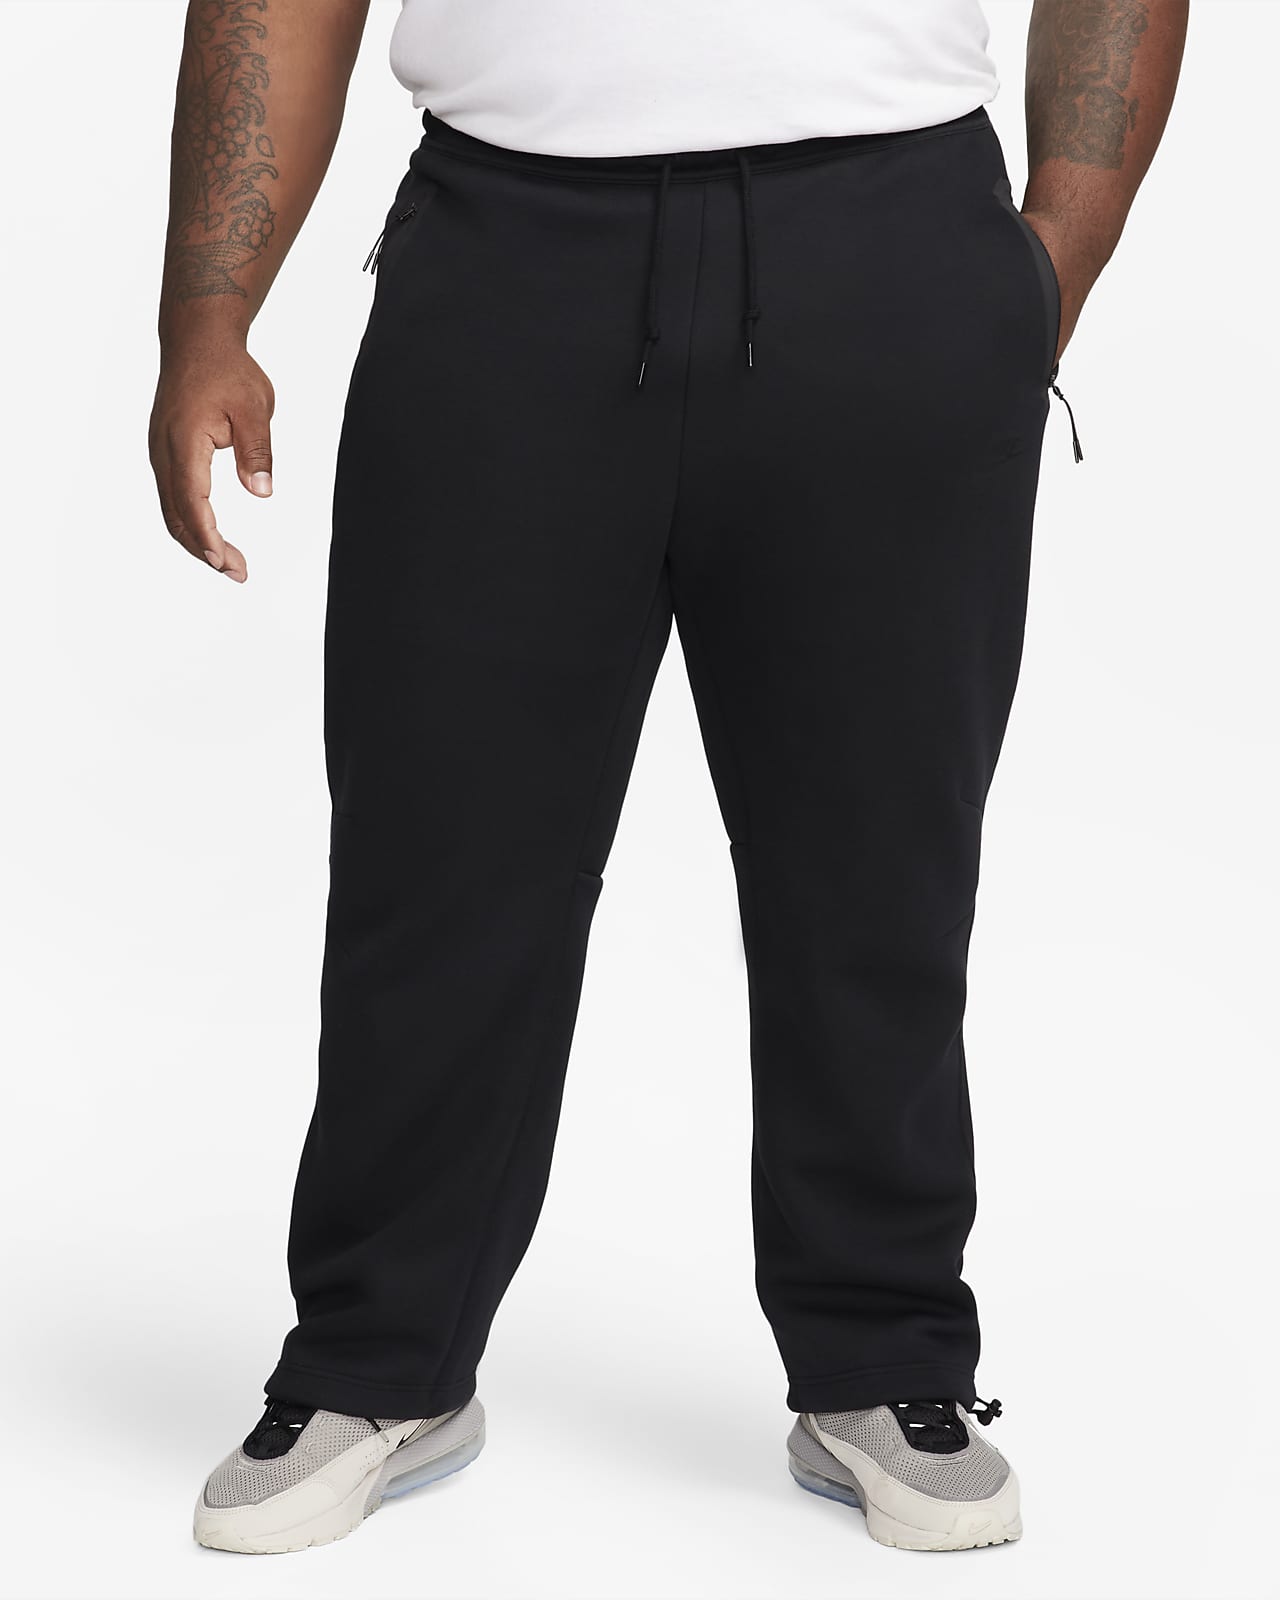 Nike Sportswear Tech Fleece Joggers Beach Brown/Black Men's - FW23 - US